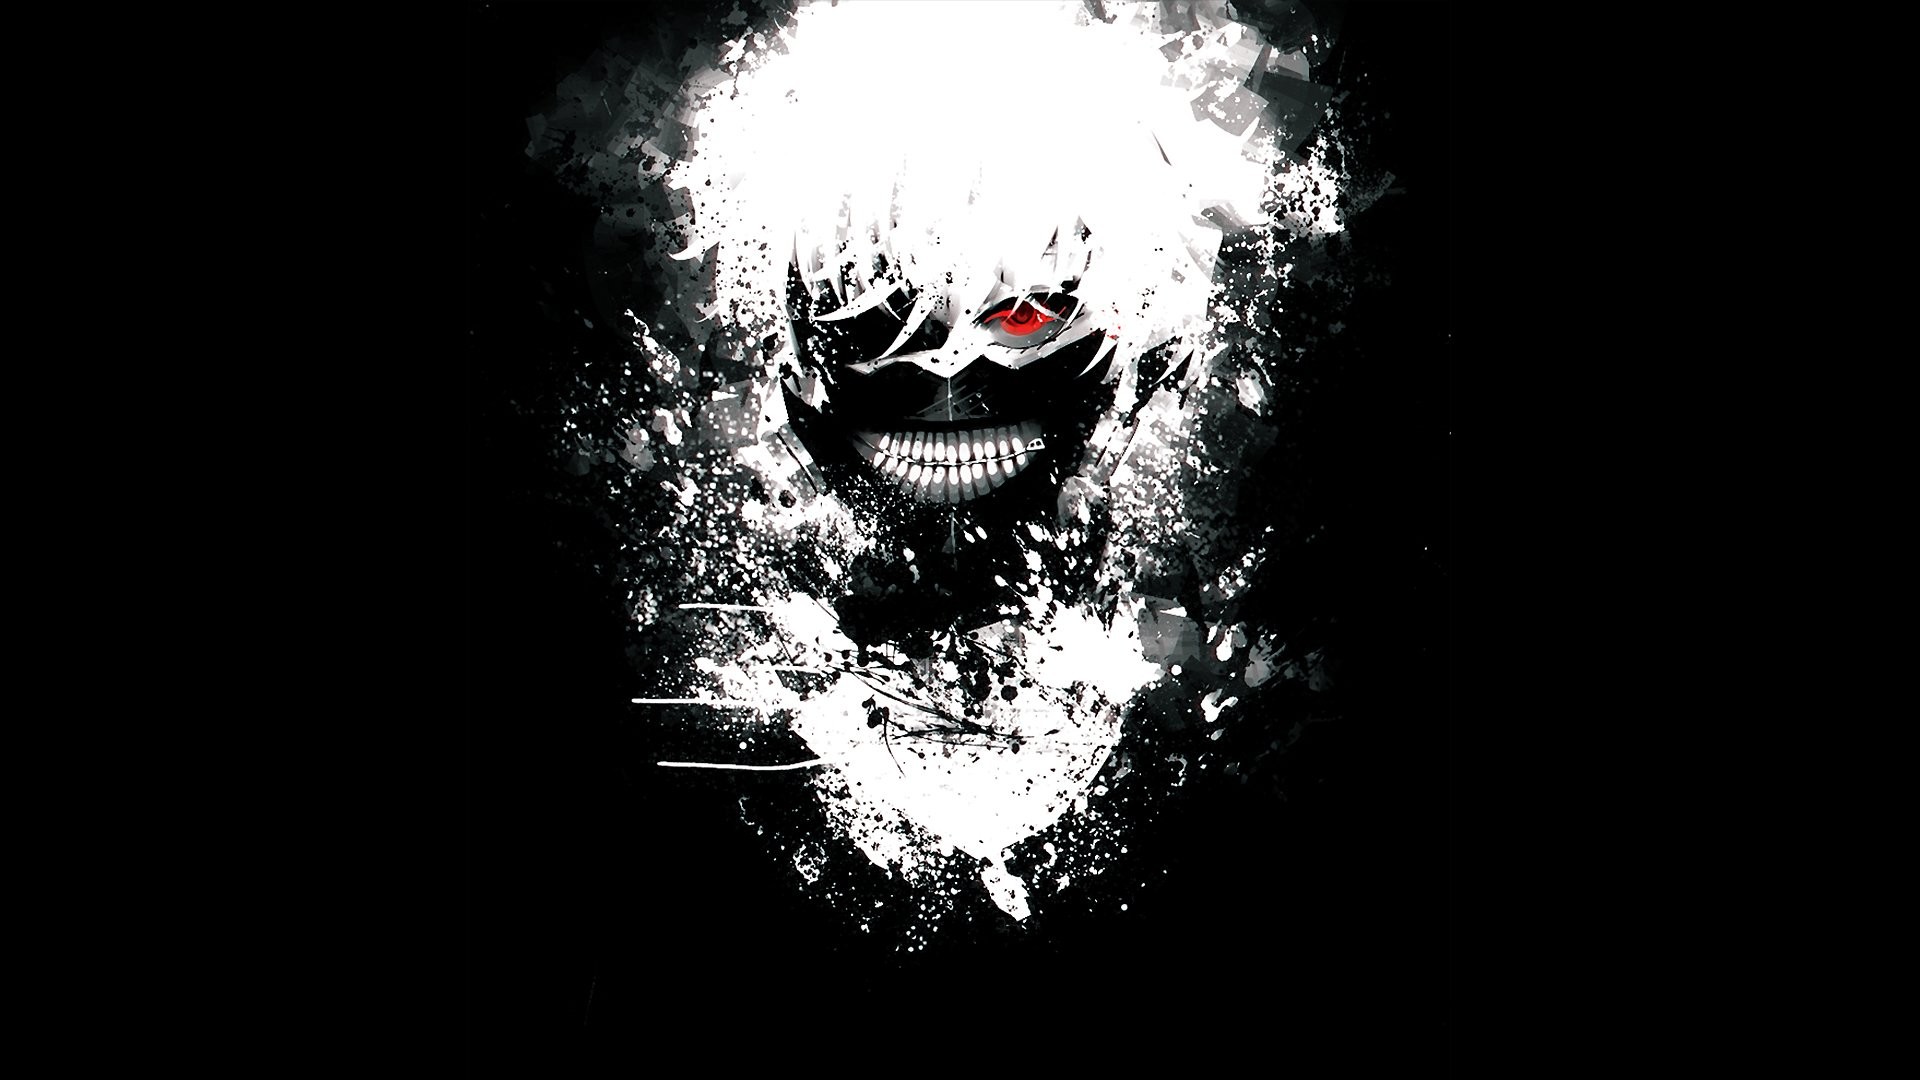 Tokyo Ghoul wallpaper ·① Download free beautiful full HD ...